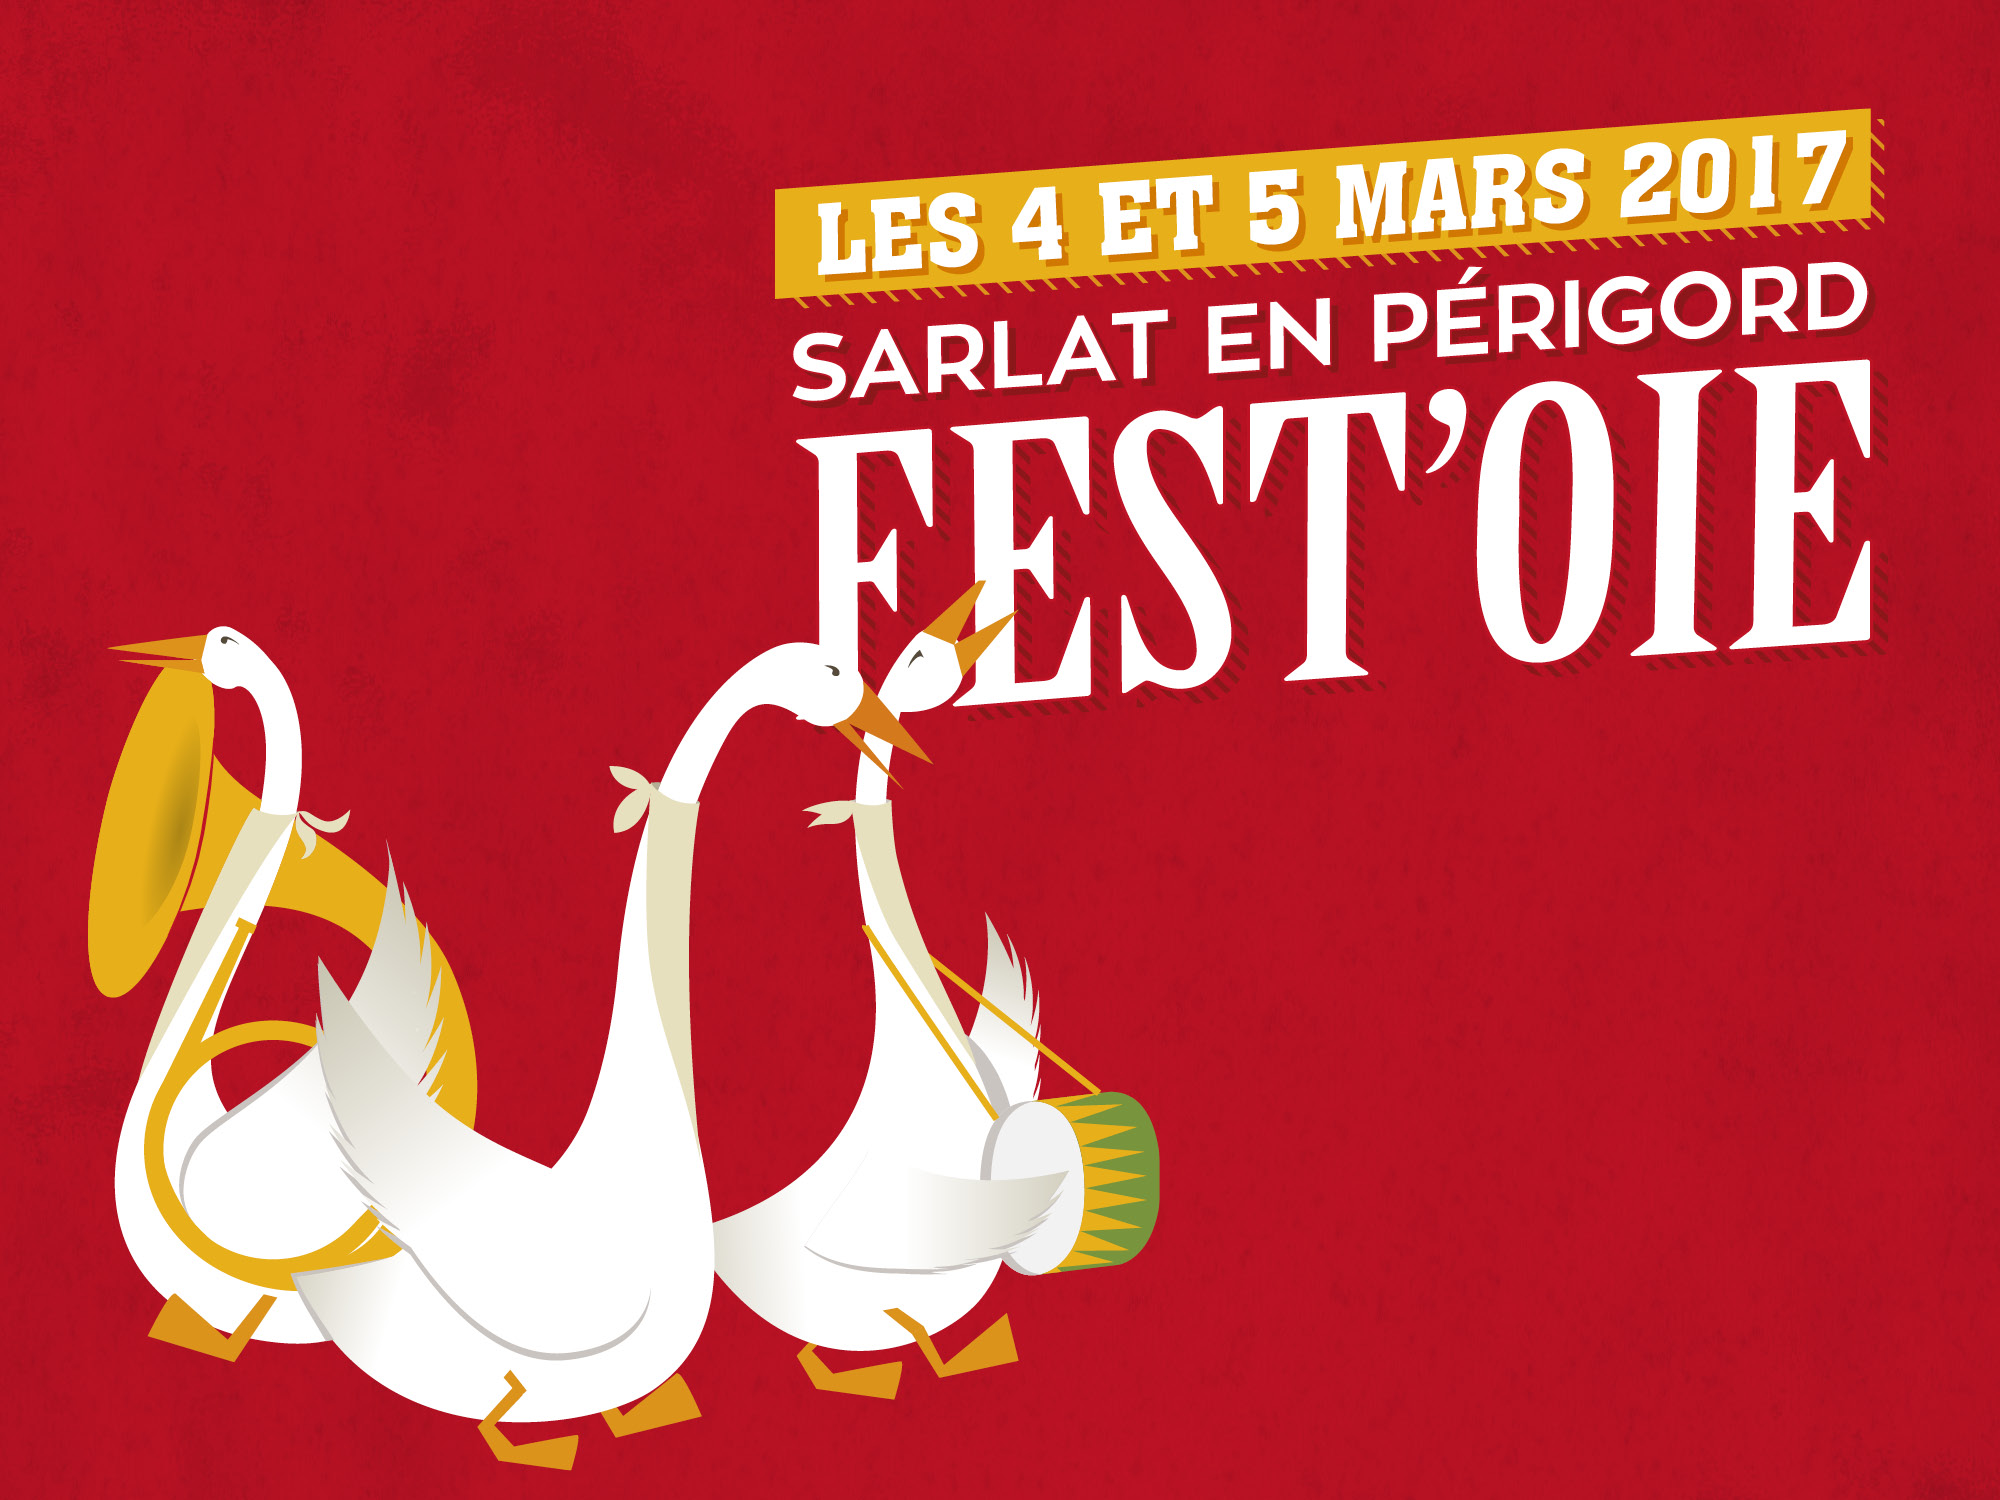 Affiche de l'événement Sarlat en Périgord Fest'oie 2017